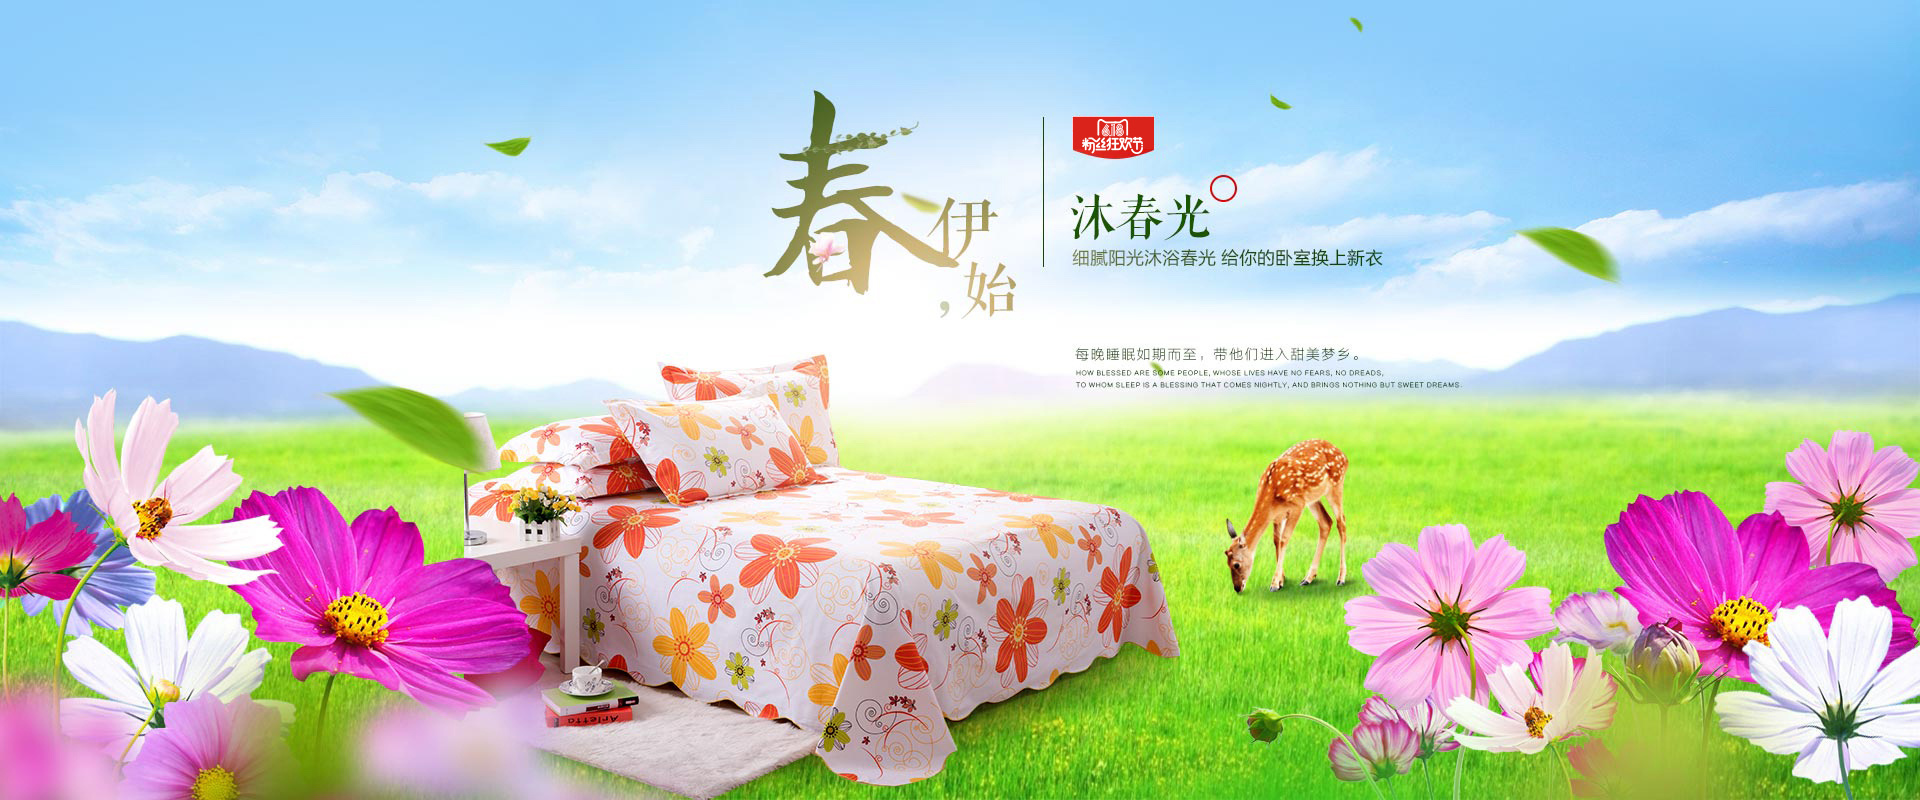 海报2p 淘宝 天猫旗舰店 家纺床上用品 床单单品 夏天夏凉活动海报